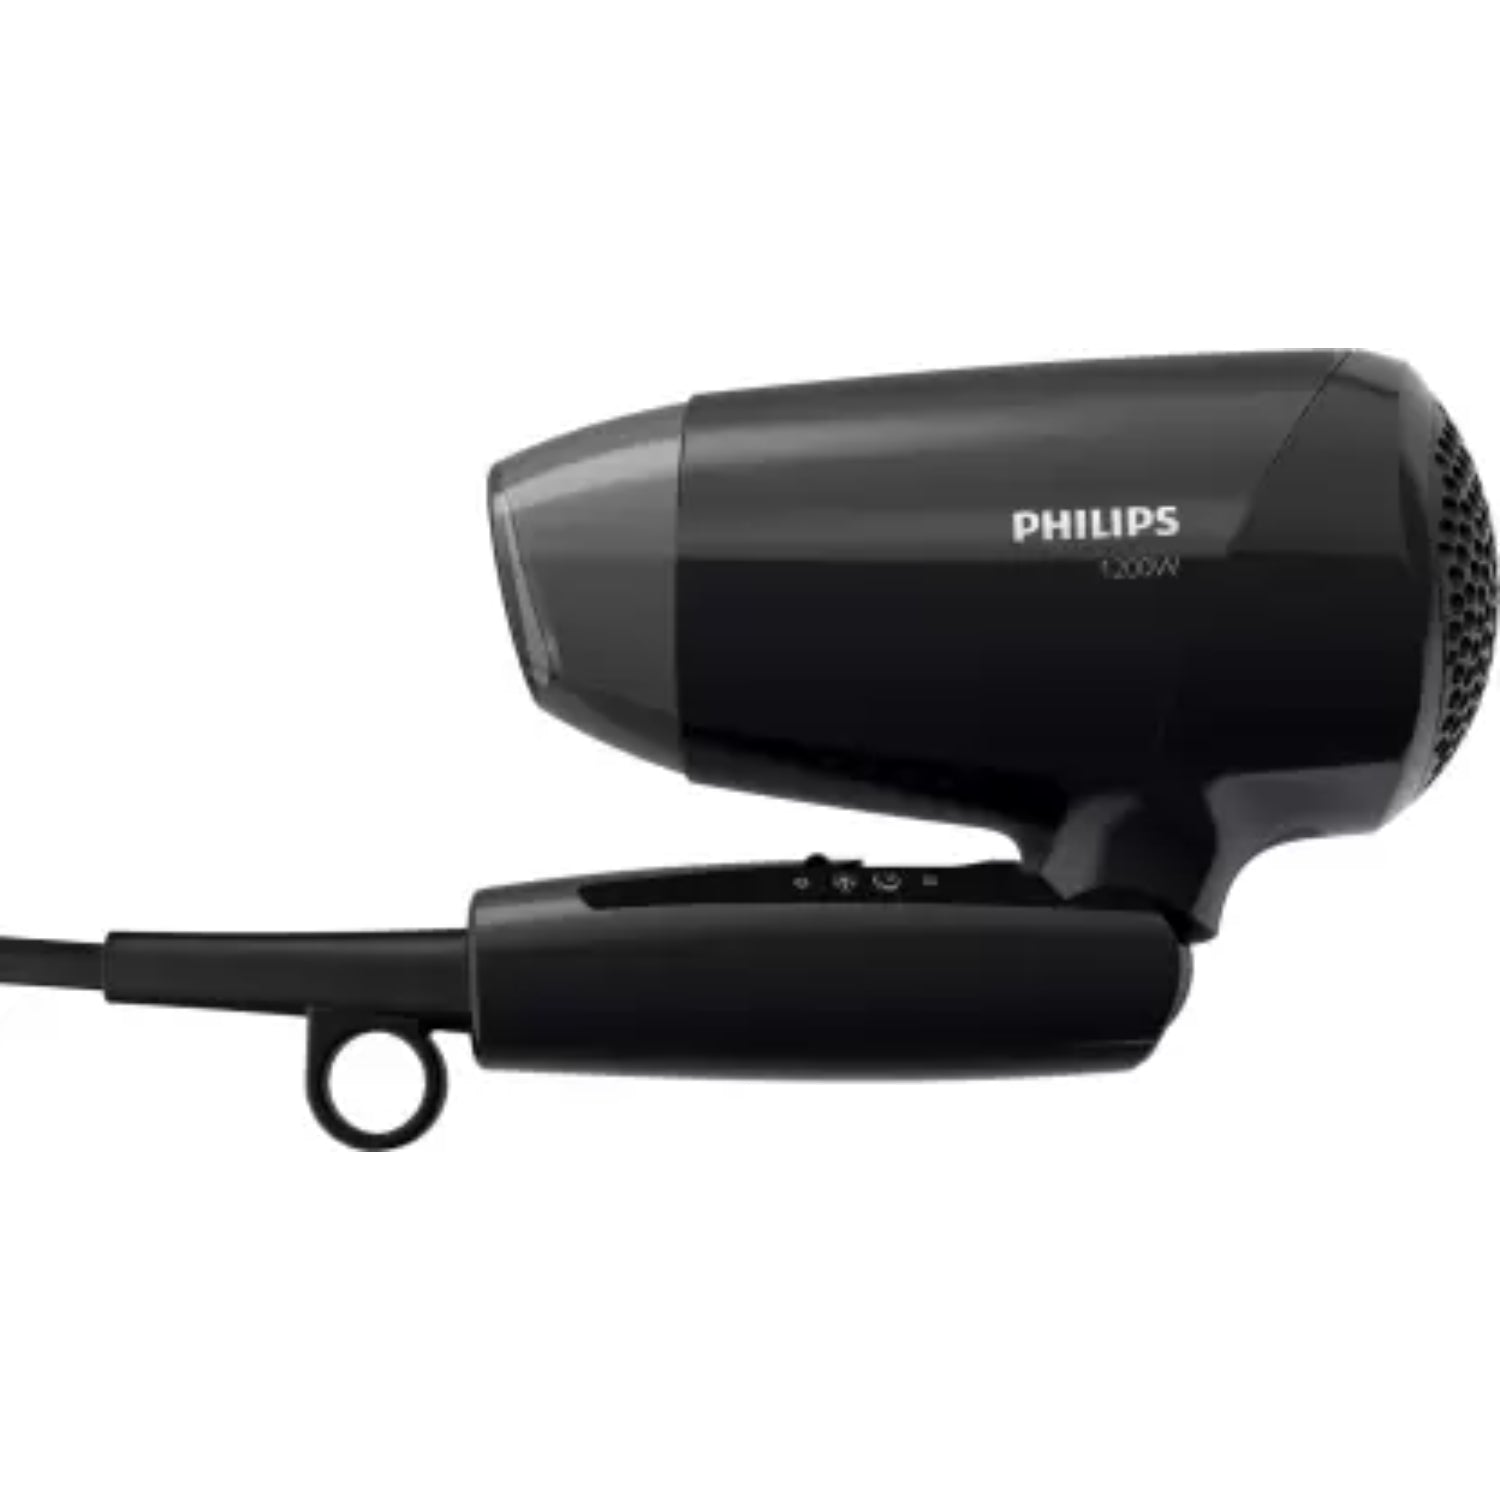 Philips BHC010 1200 W Hair Dryer